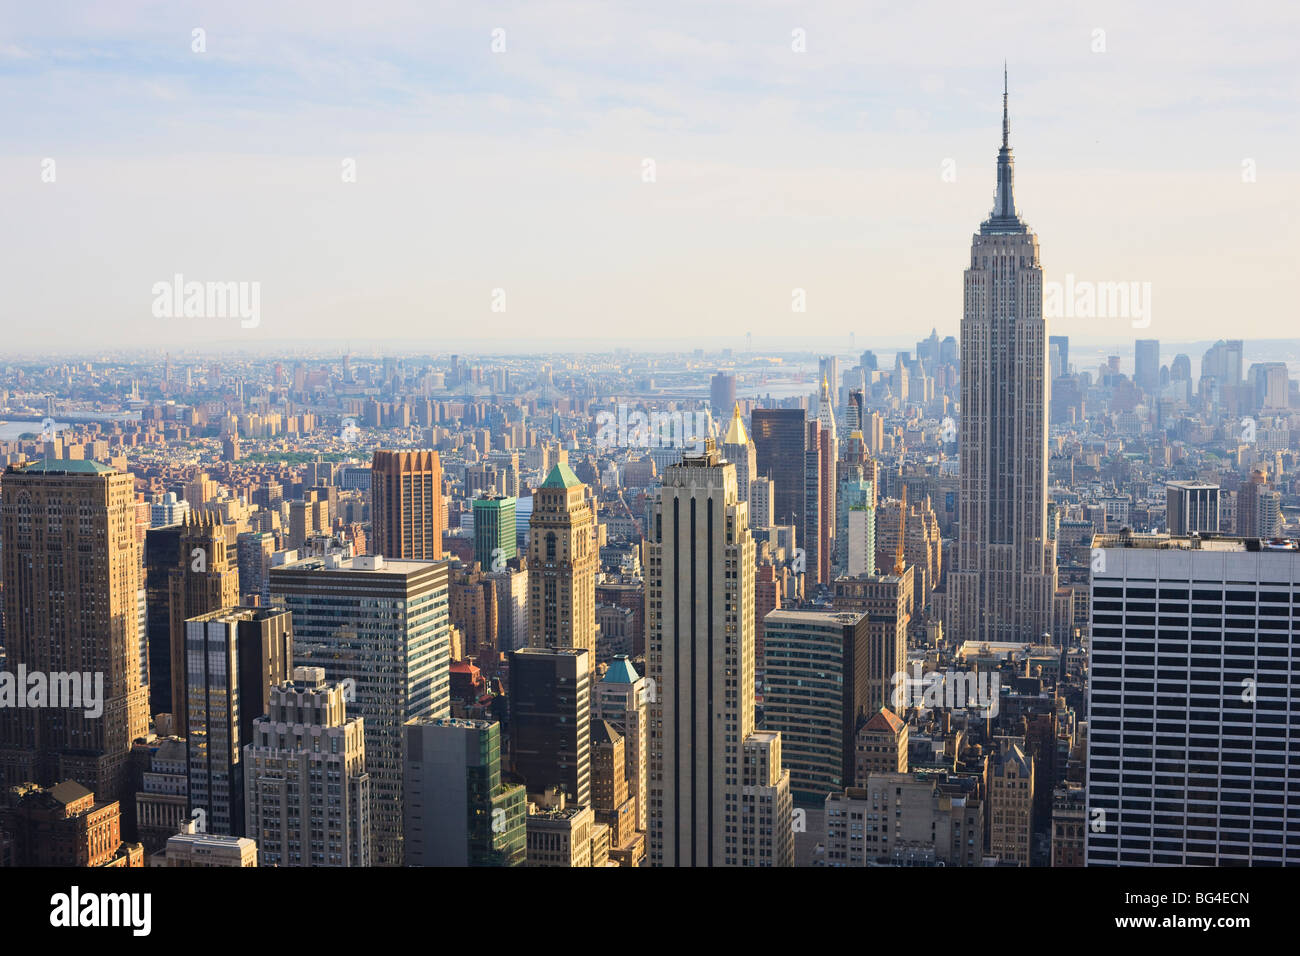 Empire State Building et Manhattan cityscape, New York City, New York, États-Unis d'Amérique, Amérique du Nord Banque D'Images